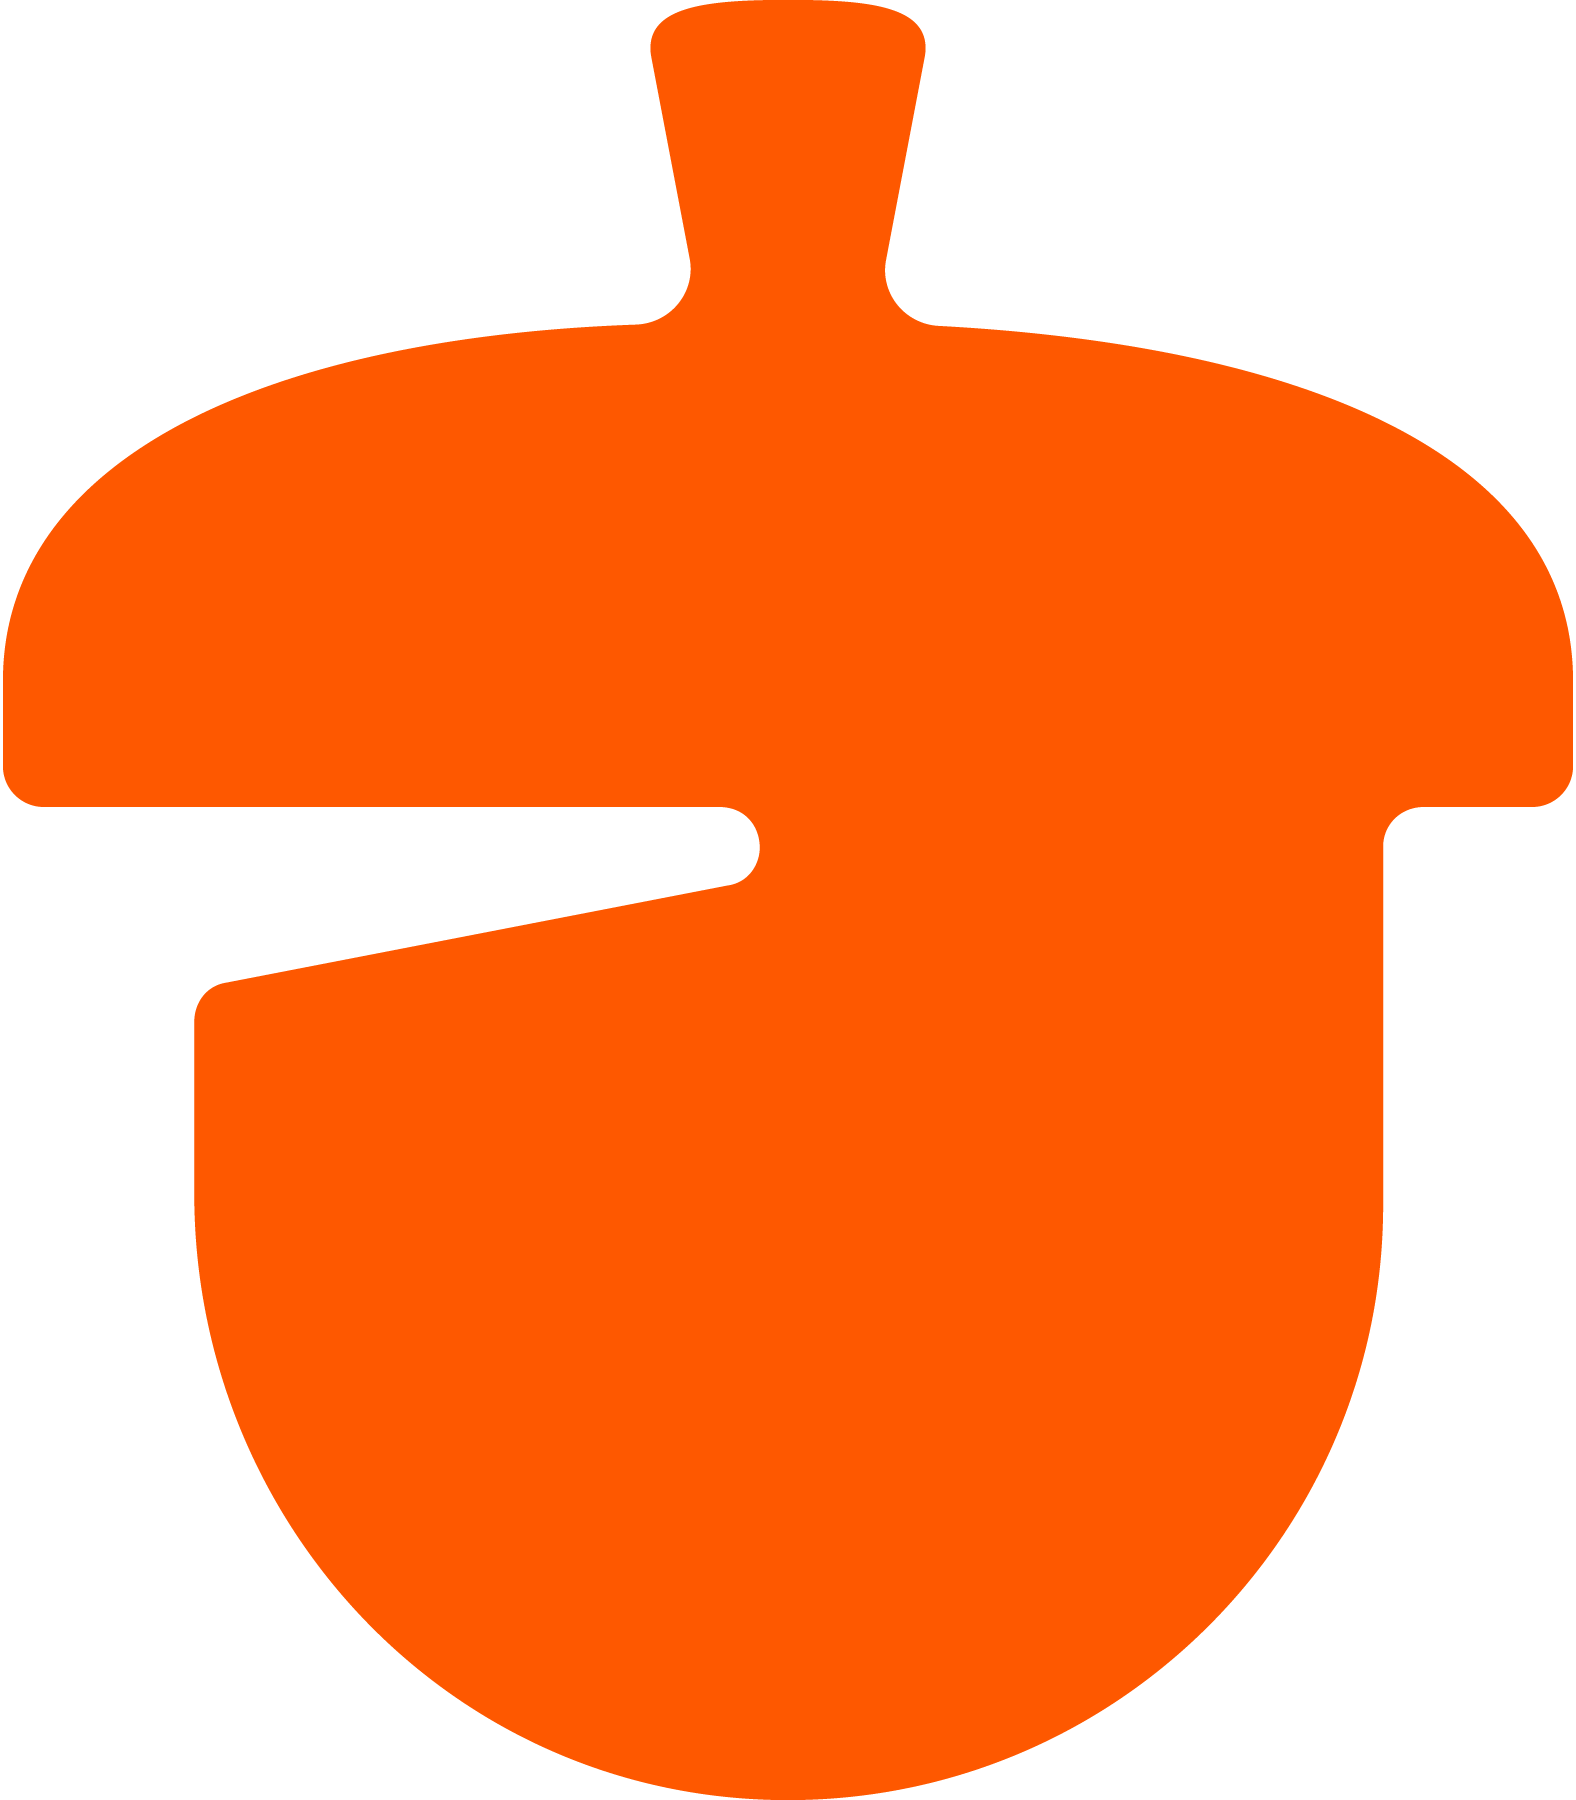 Nutshell logo